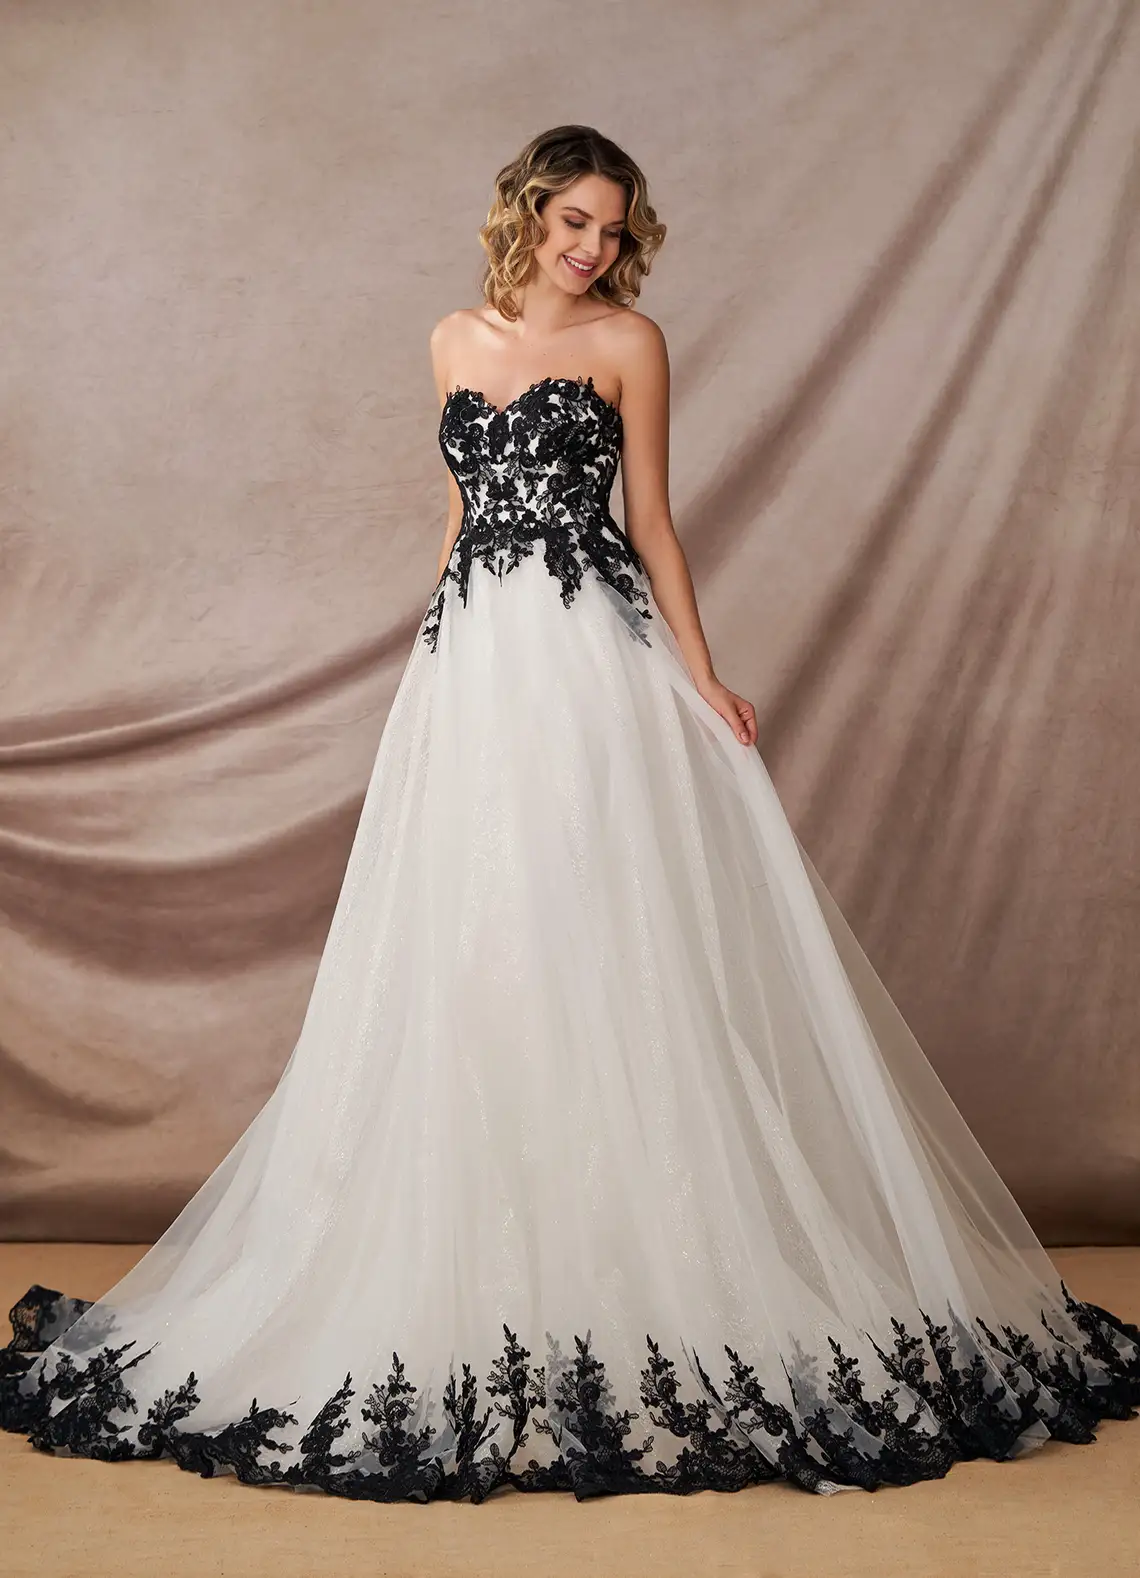 Wedding Dress Photos, Wedding Dresses Pictures - WeddingWire.com